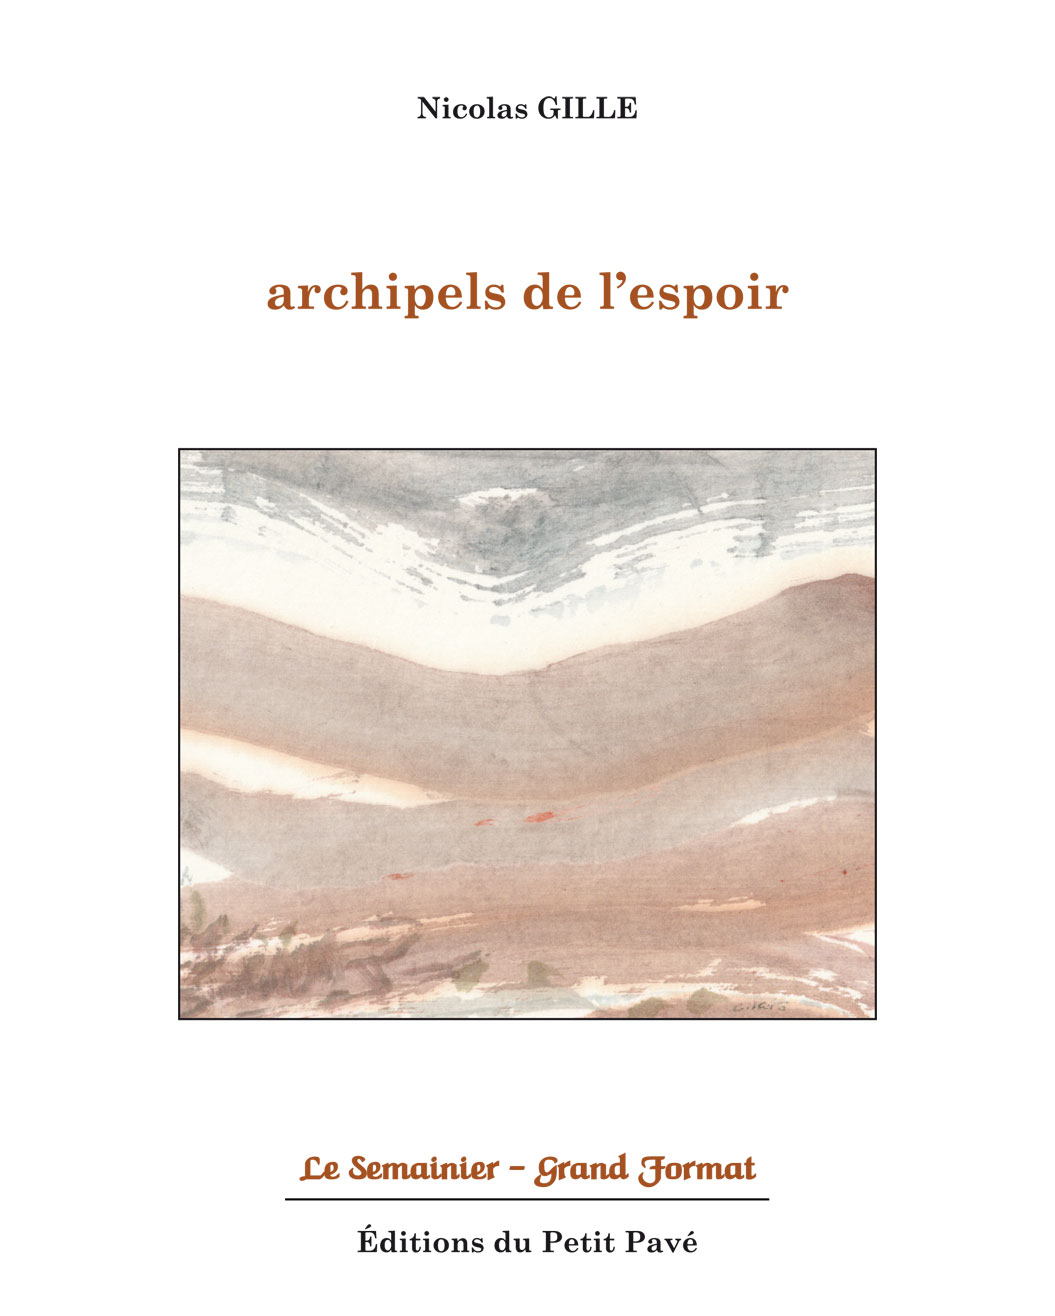 Archipels de l'espoir - Photo archipels_de_l_espoir-aux_editions_du_petit_pave-de-nicolas_gille.jpg